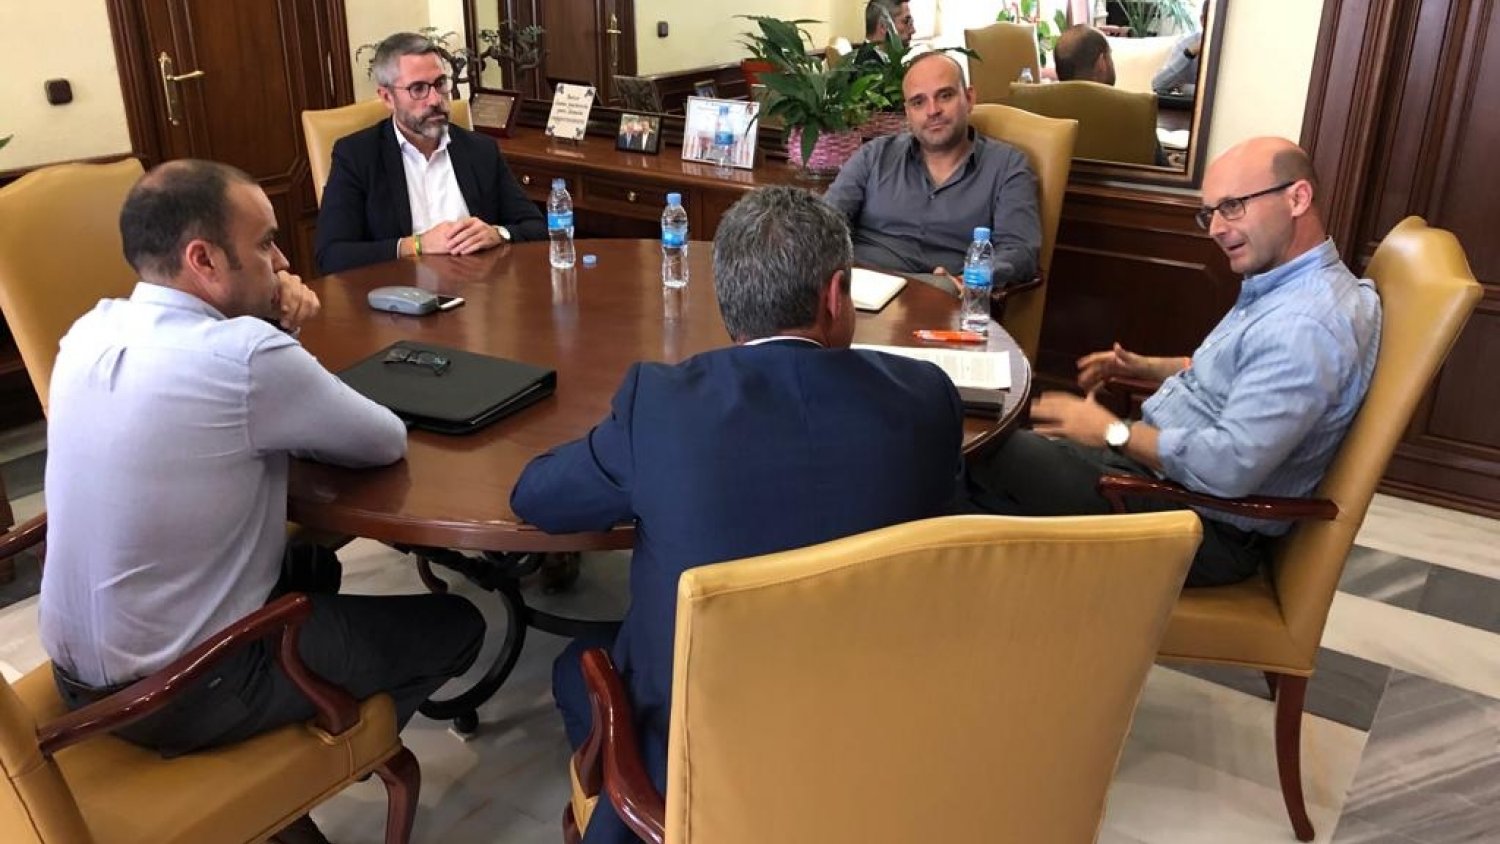 El alcalde de Mijas en funciones pide a Urbaser y a sus trabajadores que se reúnan para que puedan llegar pronto a un entendimiento